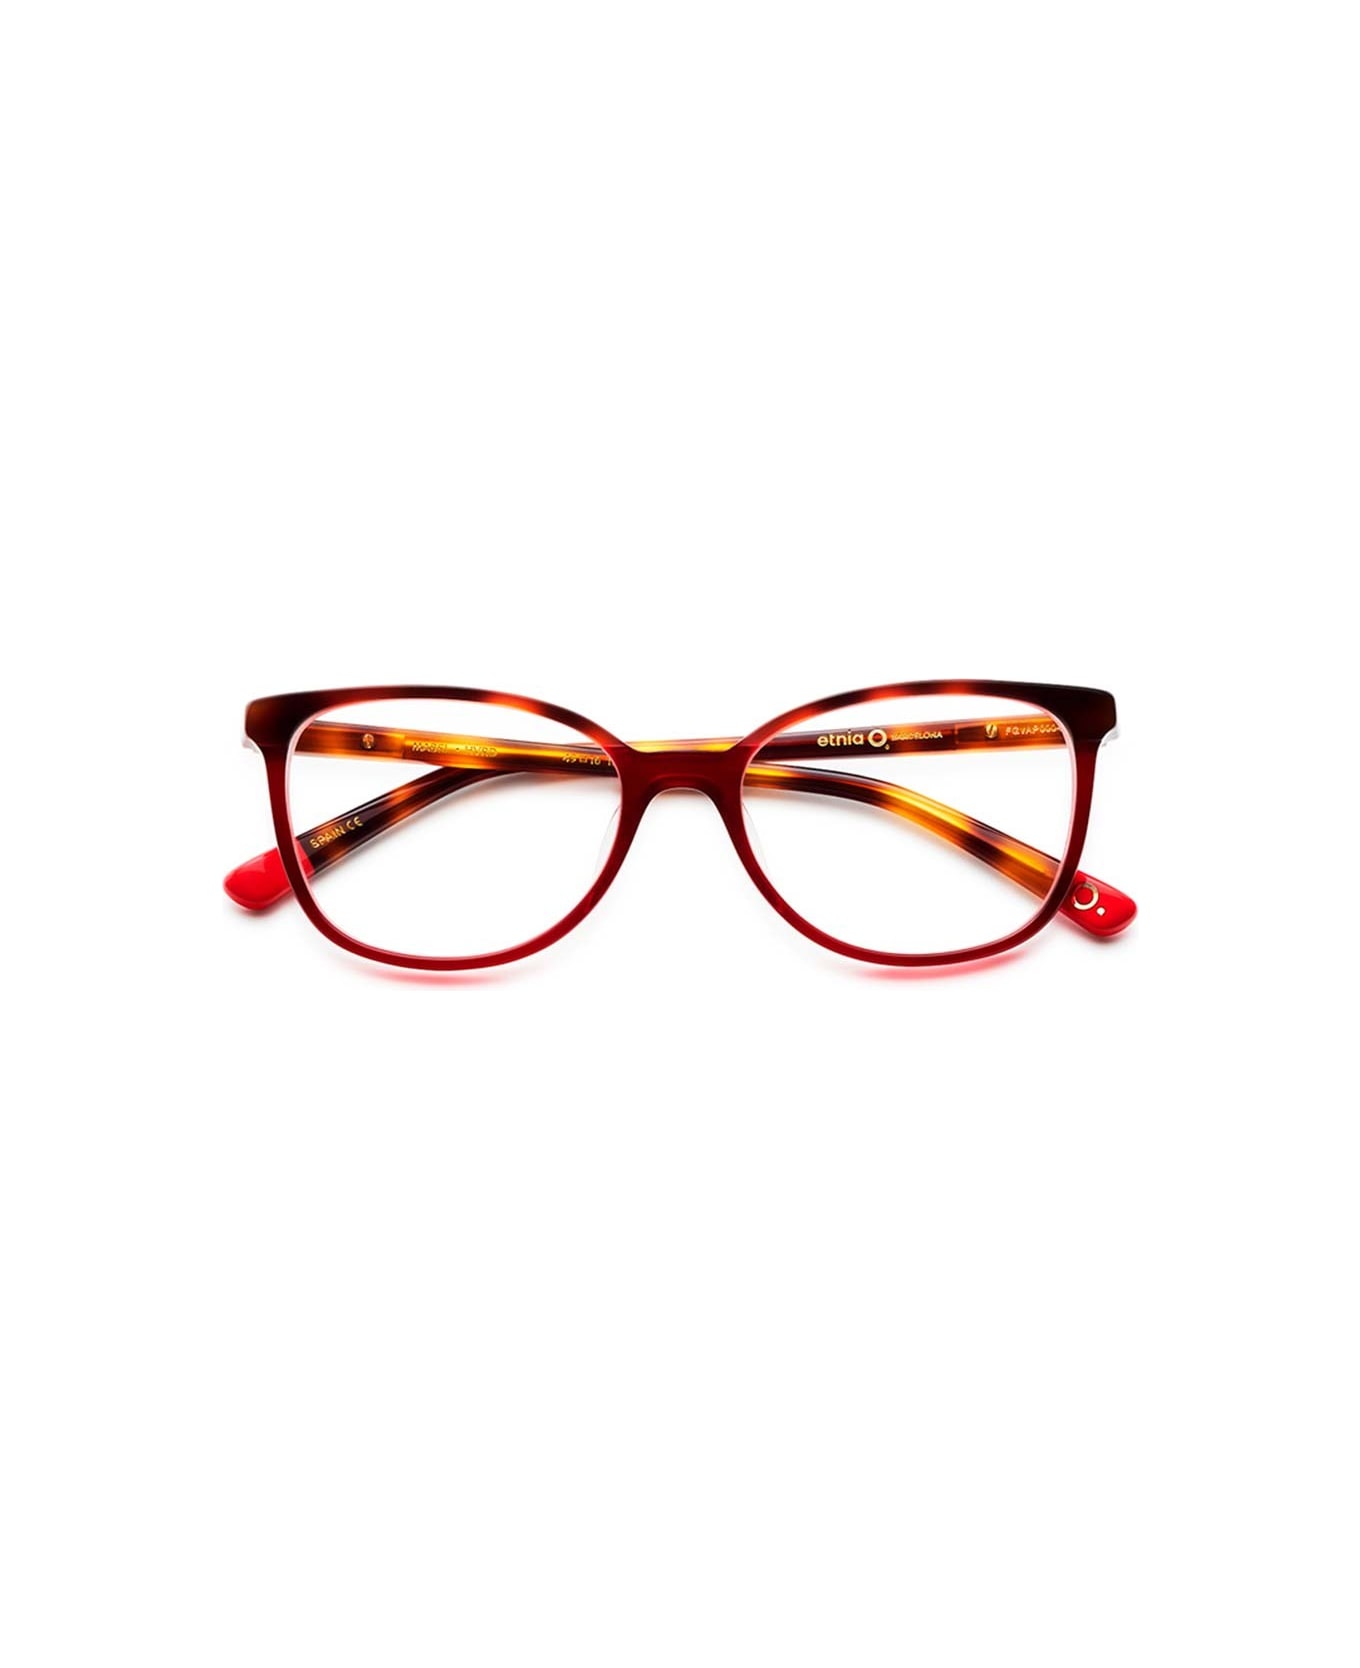 Etnia Barcelona Eyewear - Rosso アイウェア